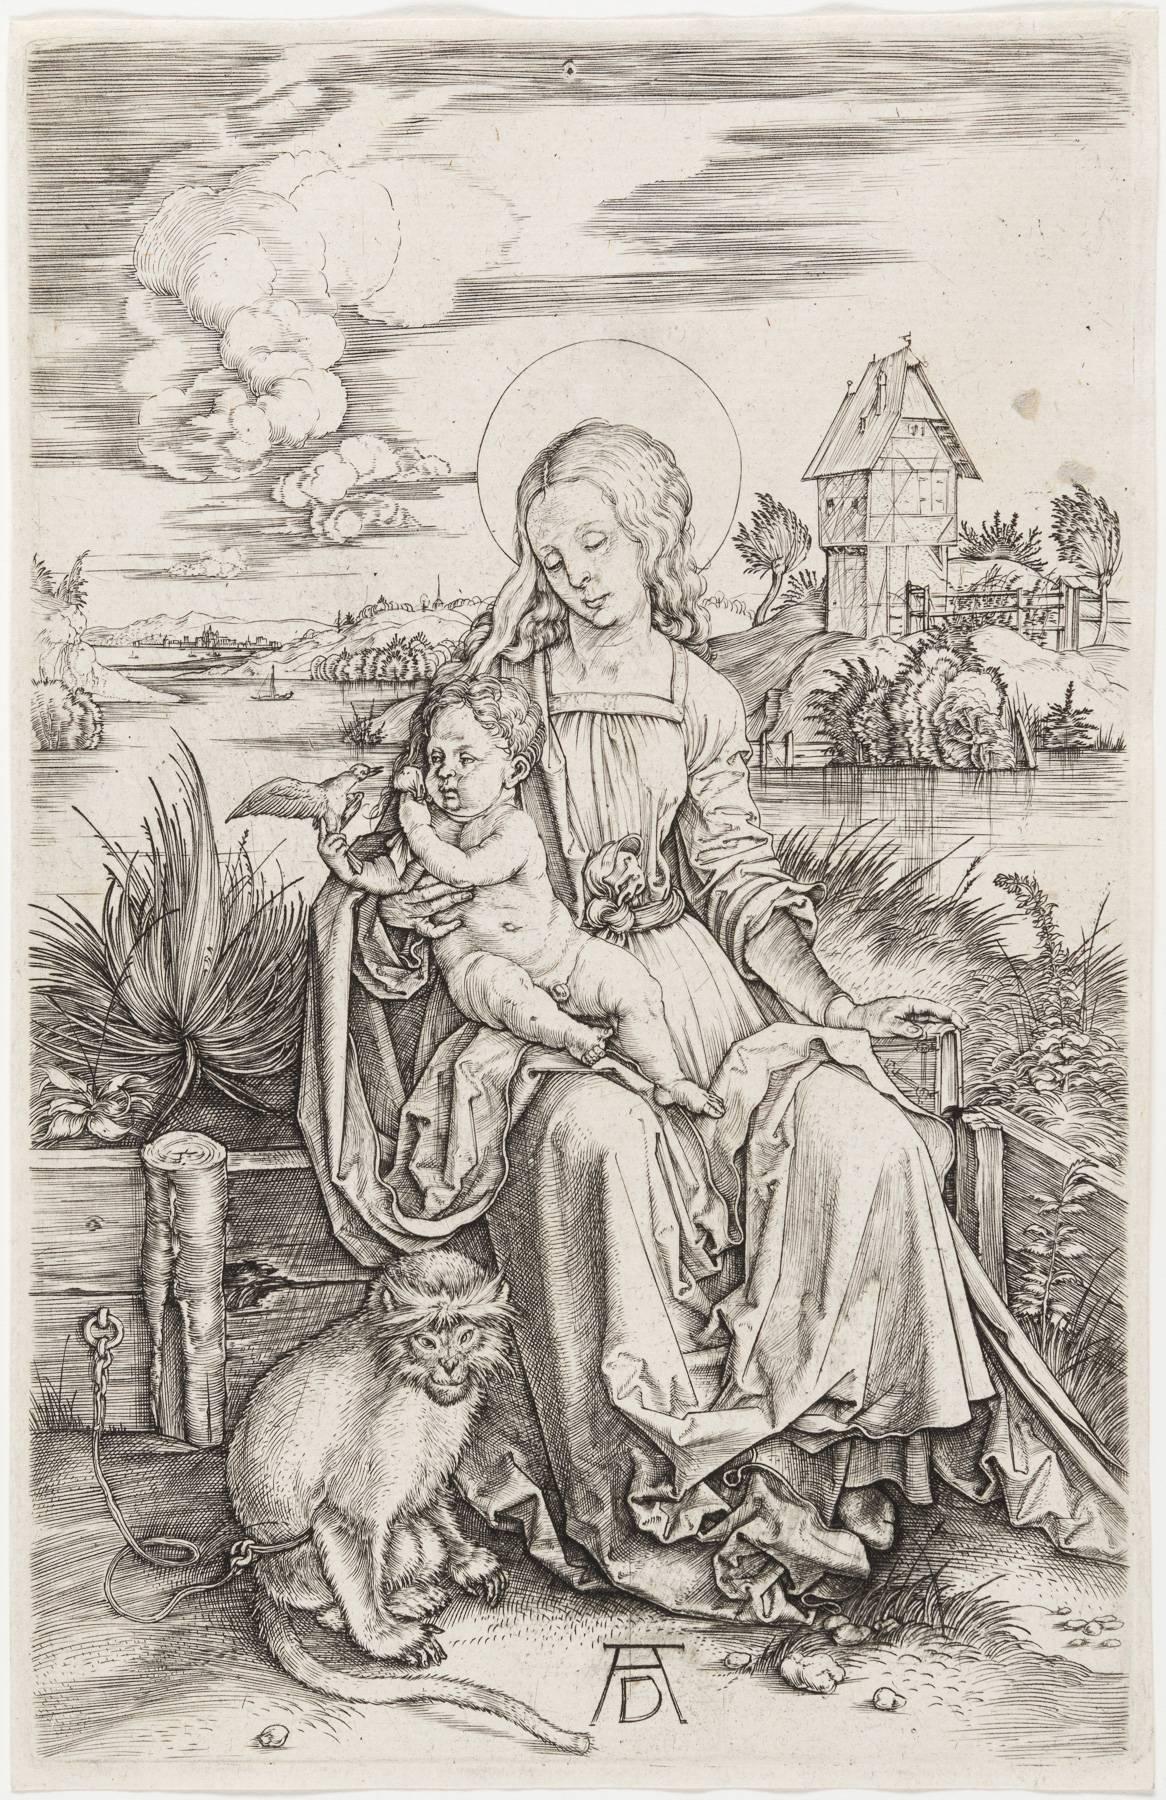 Madonna & Child avec le singe - Print de Albrecht Dürer